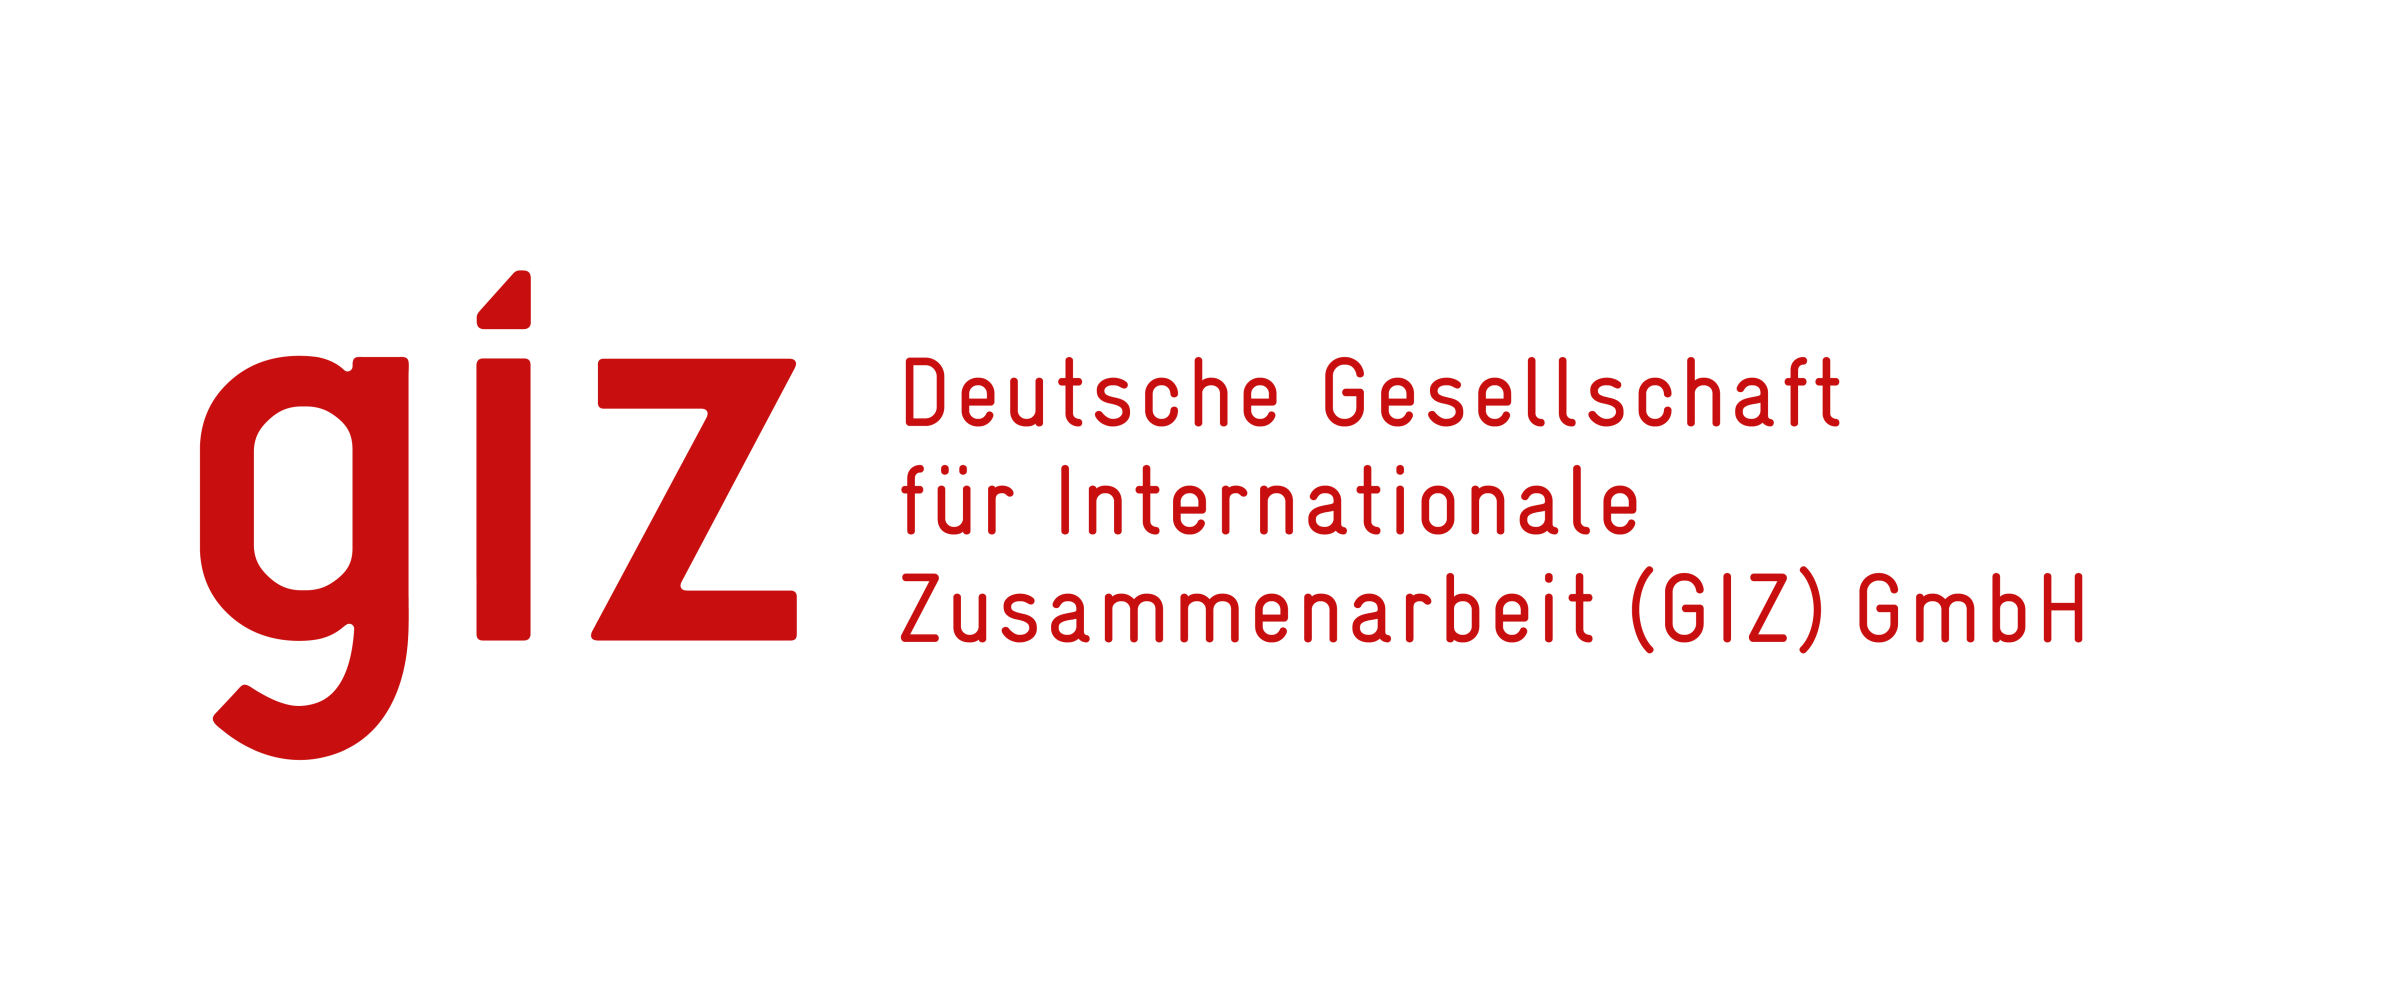 Startseite Deutsche Gesellschaft für Internationale Zusammenarbeit (GIZ)